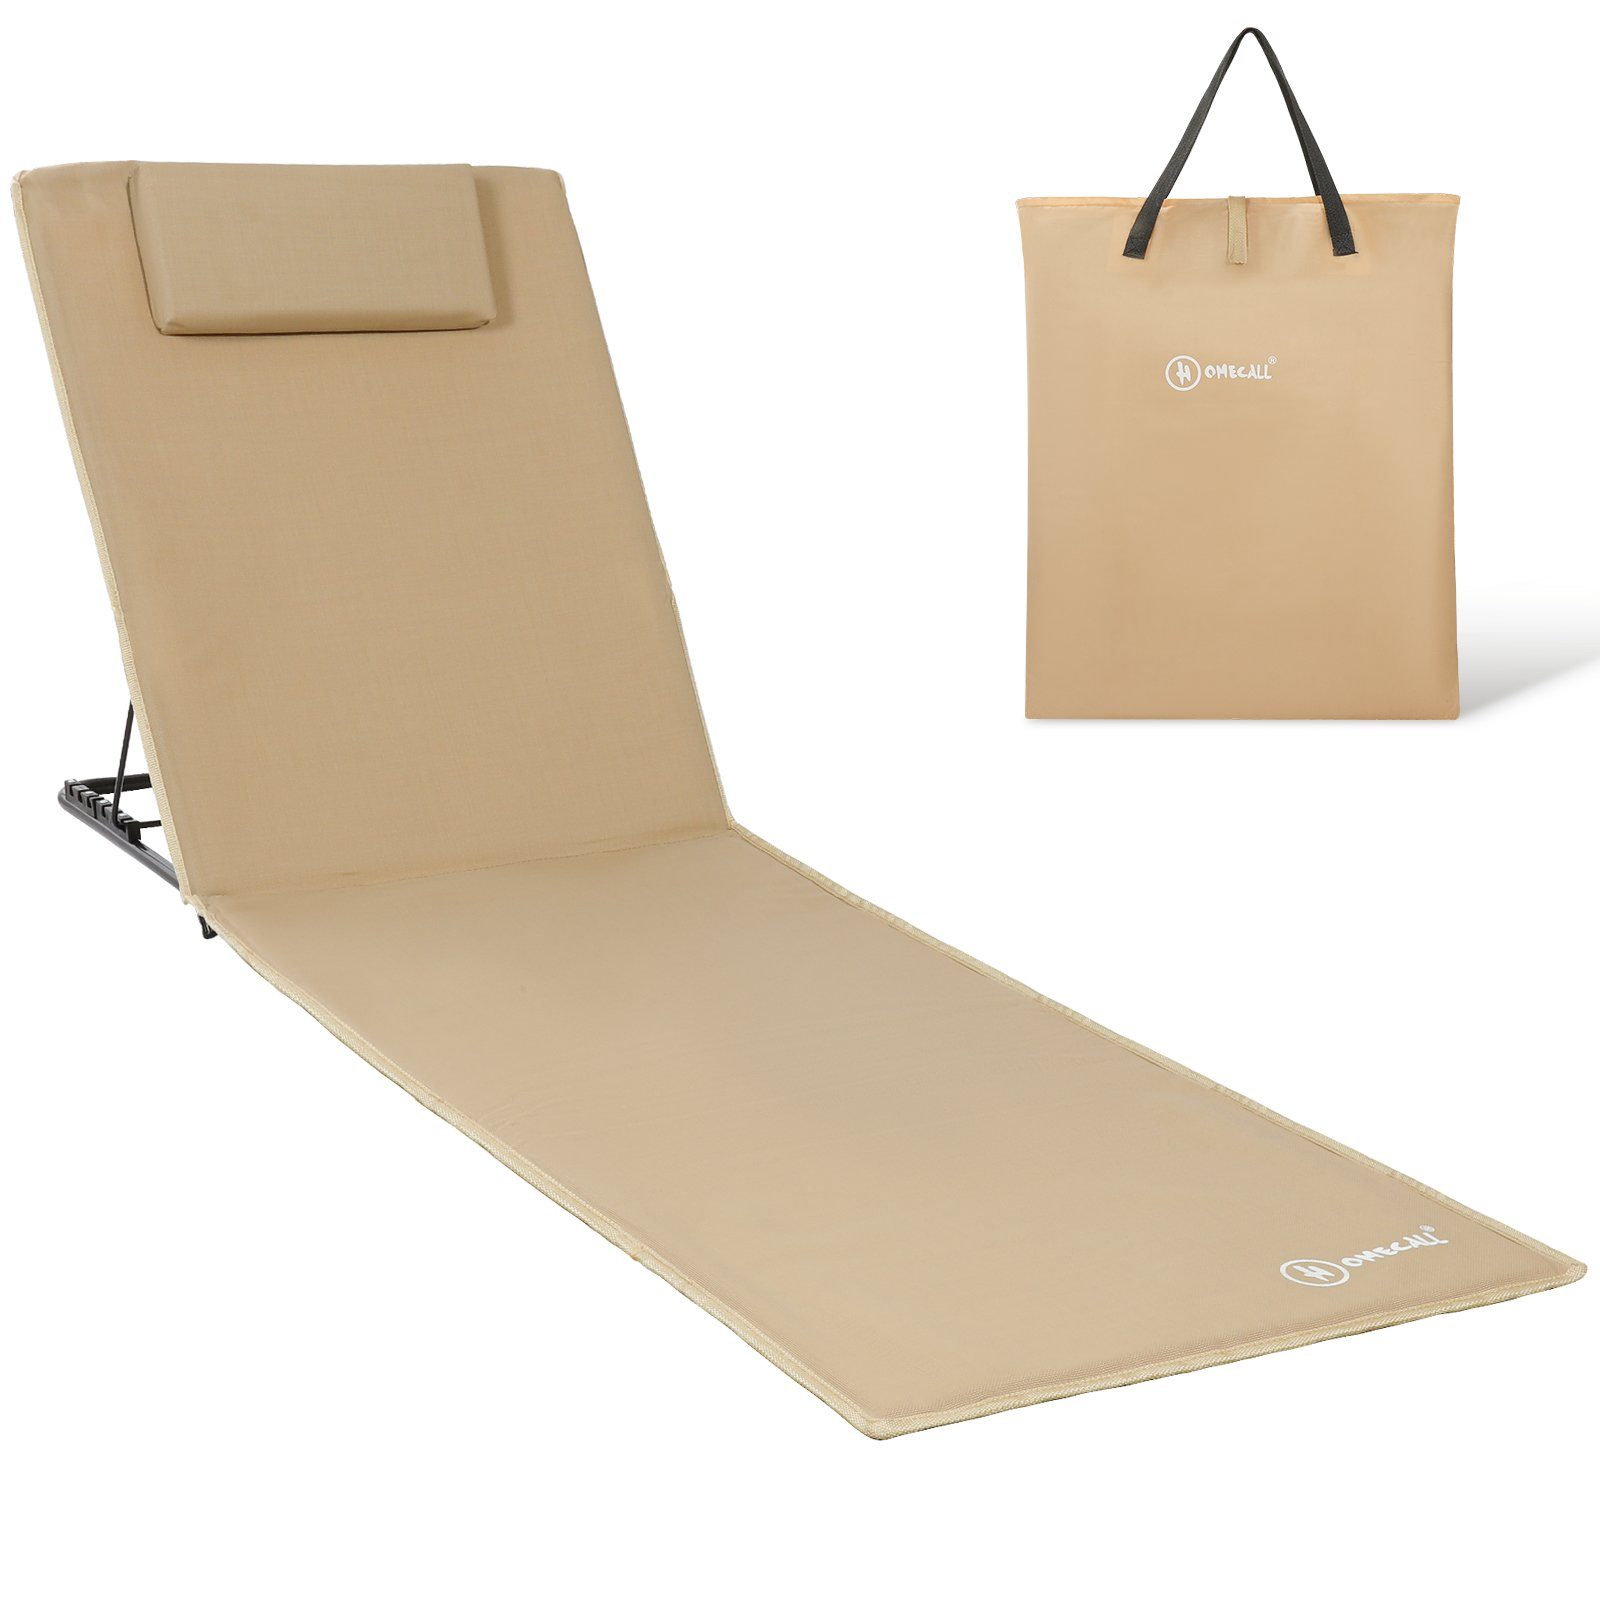 HOMECALL Strandtuch Strandmatte Liegestuhl 200x60cm fach mit Trocknet, Textilene, leicht, verstellbarer, Schnell Strandliege klappbar Gepolsterte beige Tasche, 6